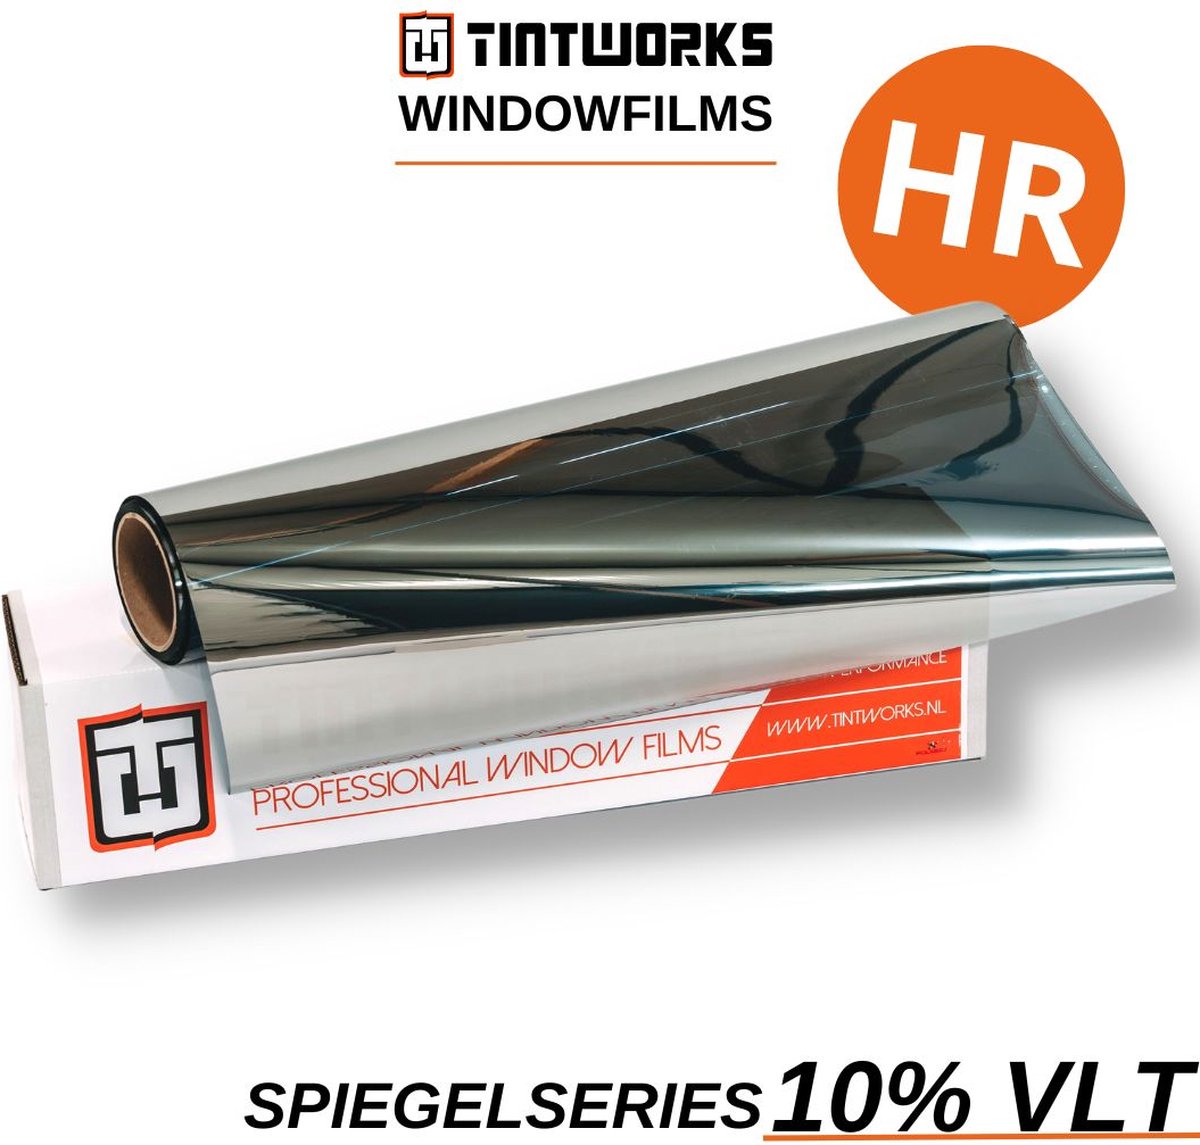 Tintworks Raamfolie spiegeleffect - spiegelfolie - anti inkijk 10% VLT - HR(+++) Glas - 300cm x 122cm - Zonwerend & isolerend - Professionele A-kwaliteit